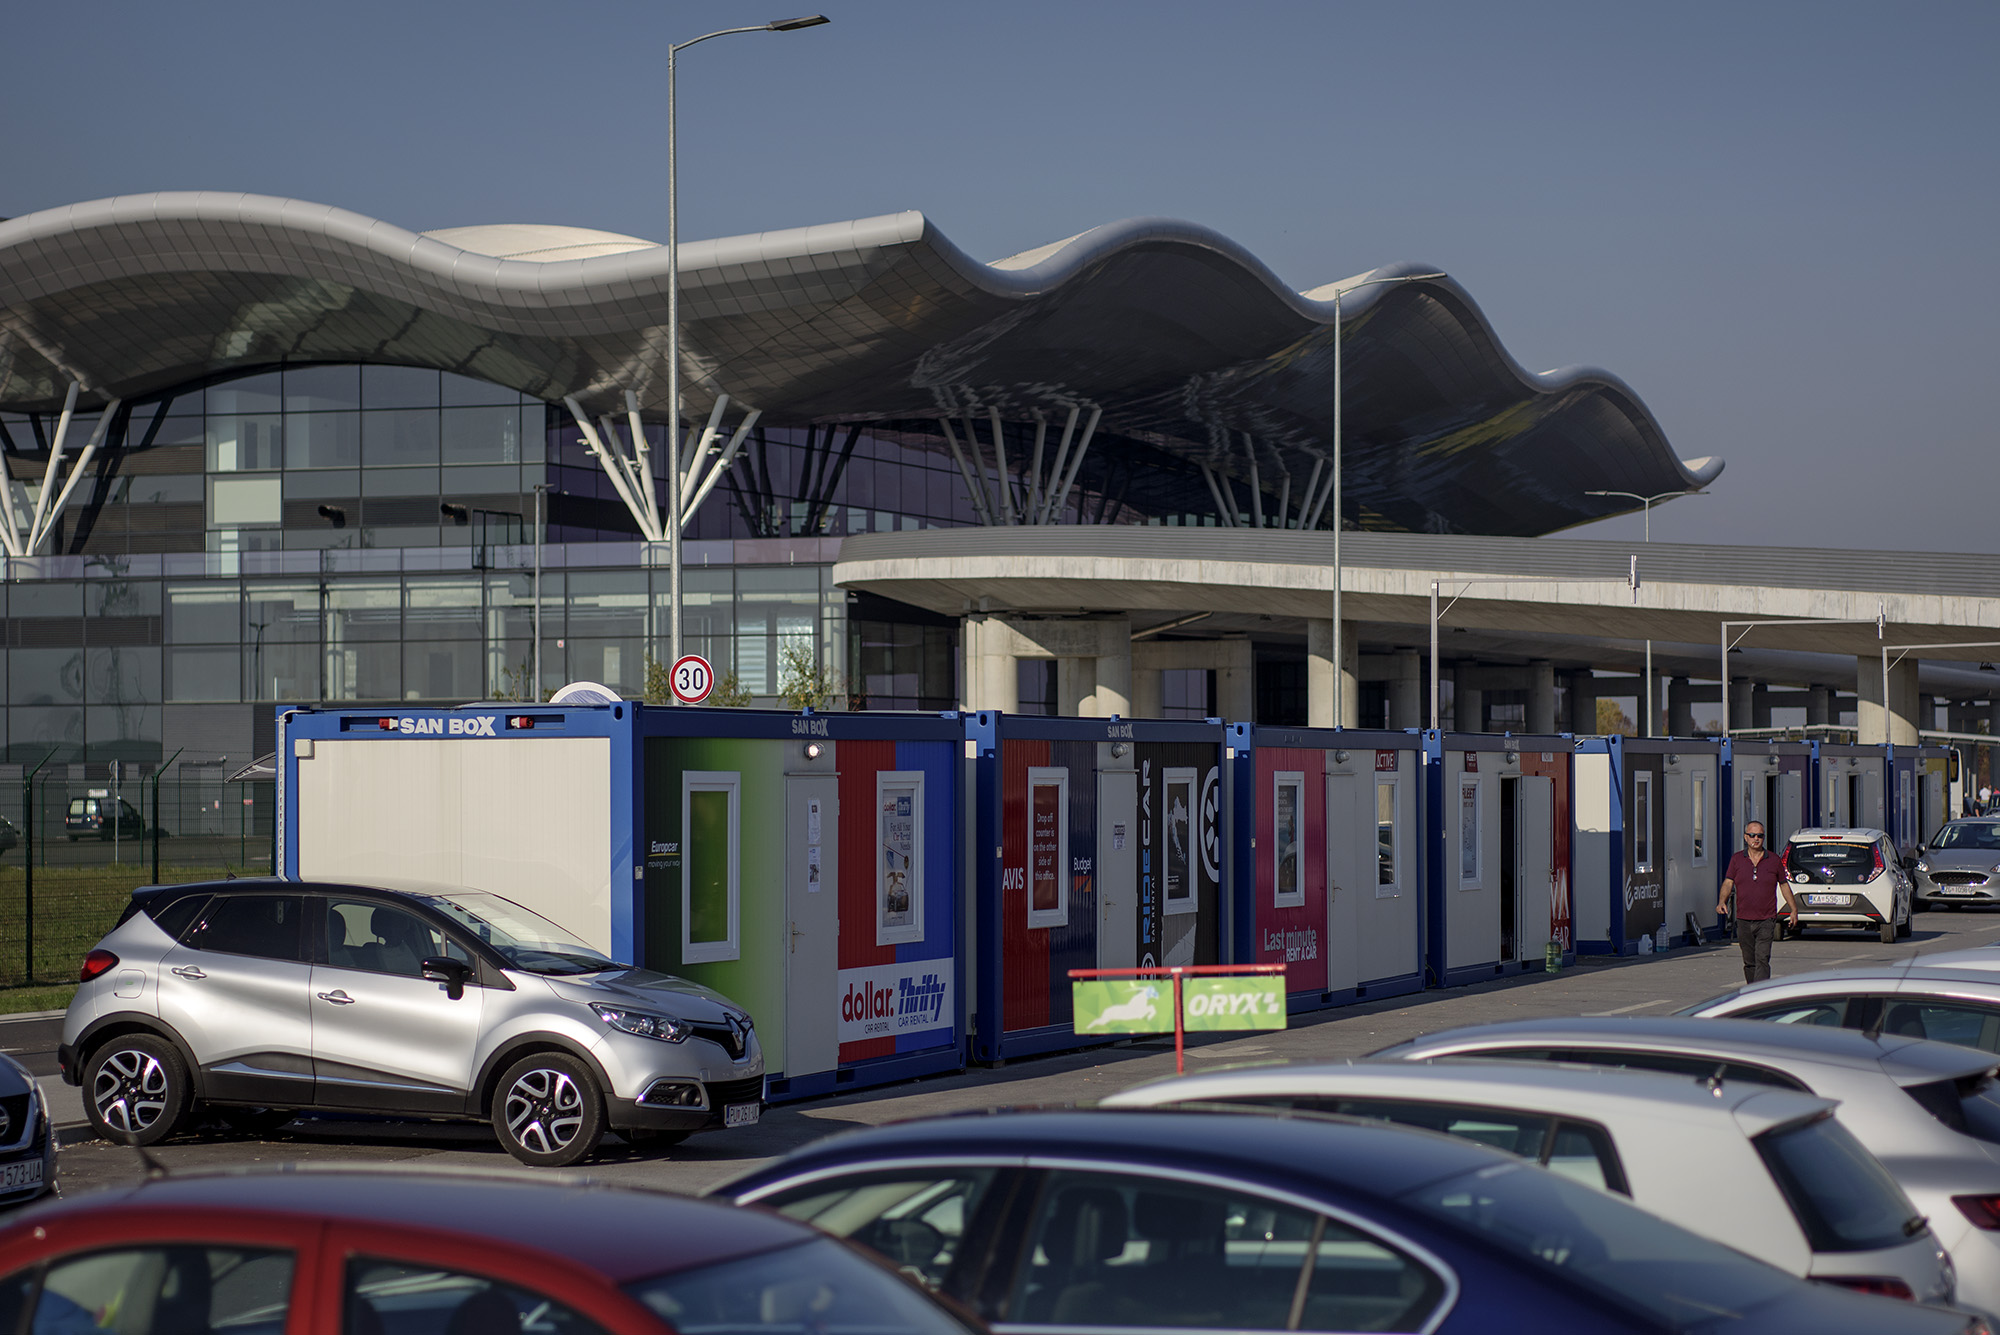 Novi terminal zagrebačkog aerodroma, vrijedan oko 300 milijuna eura, počeo se graditi prije pet godina. Dovršen je i svečano predstavljen u ožujku prošle godine. Ima 65 tisuća kvadrata, na četiri razine. No, godinu i pol nakon pompoznog otvaranja, na parkiralištu aerodroma stoje ovi otužni limeni kontejneri.
